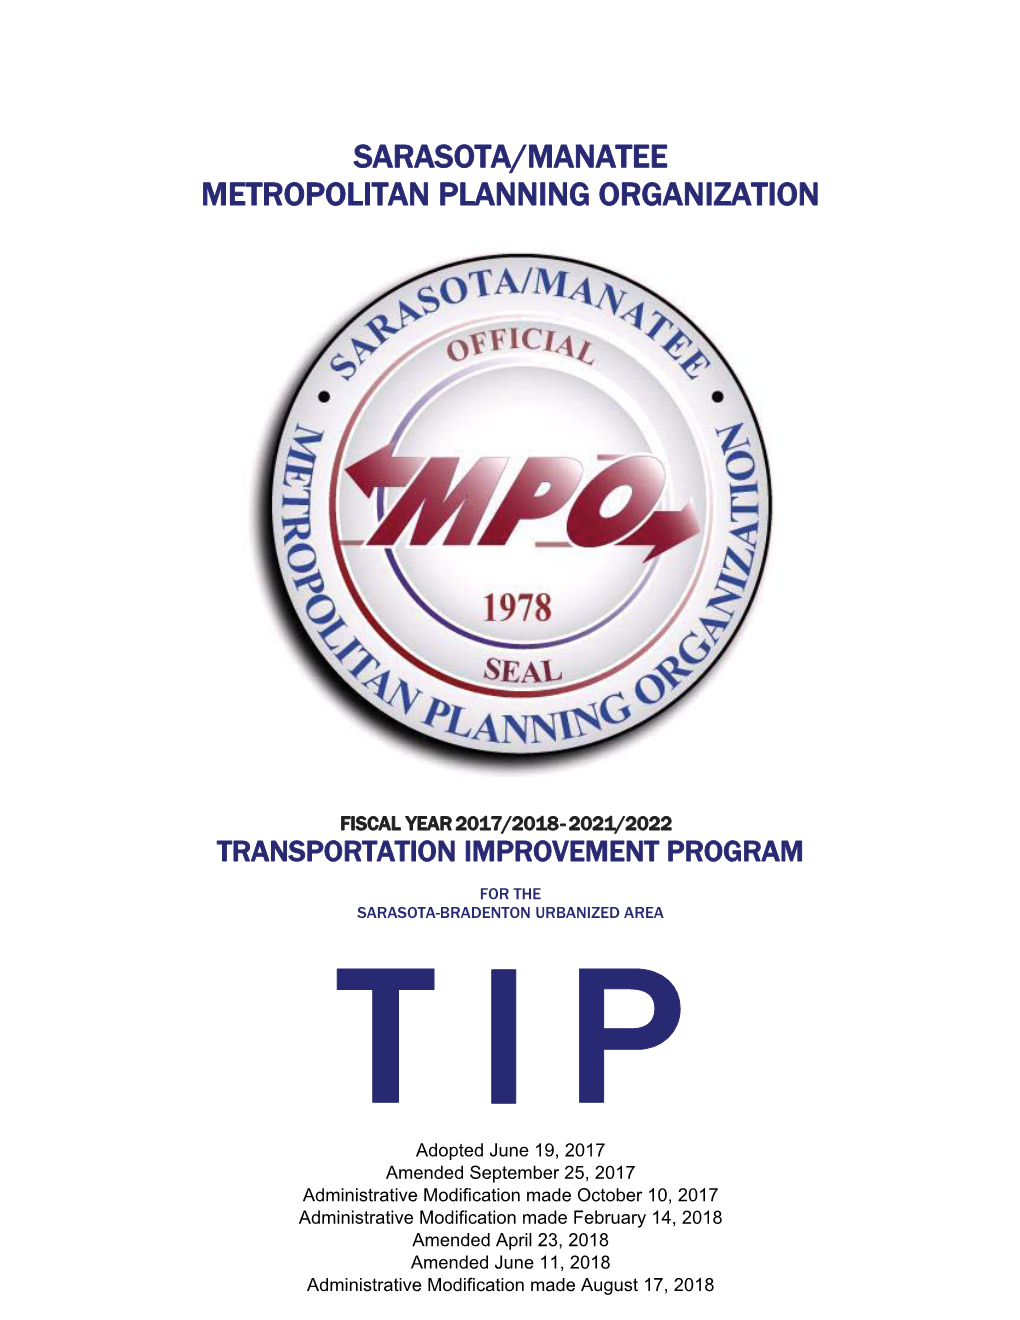 Sarasota/Manatee Metropolitan Planning Organization